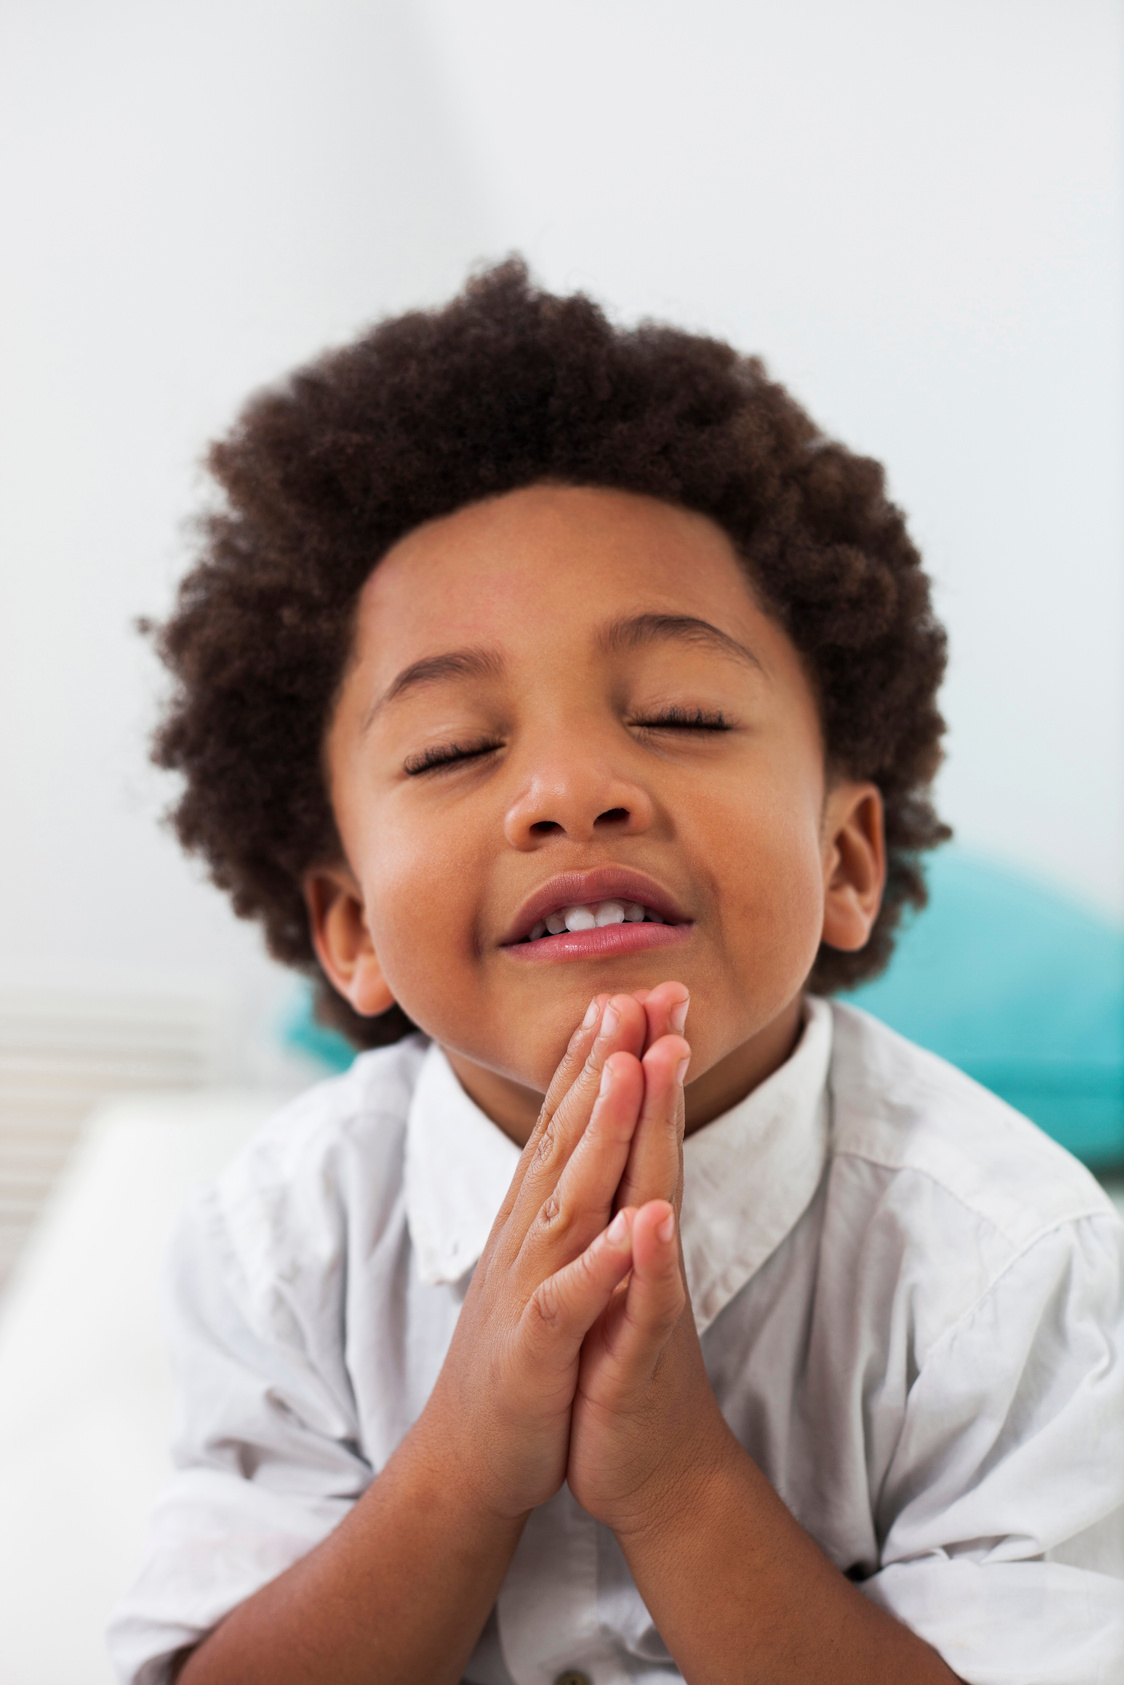 Sweet black little boy praying